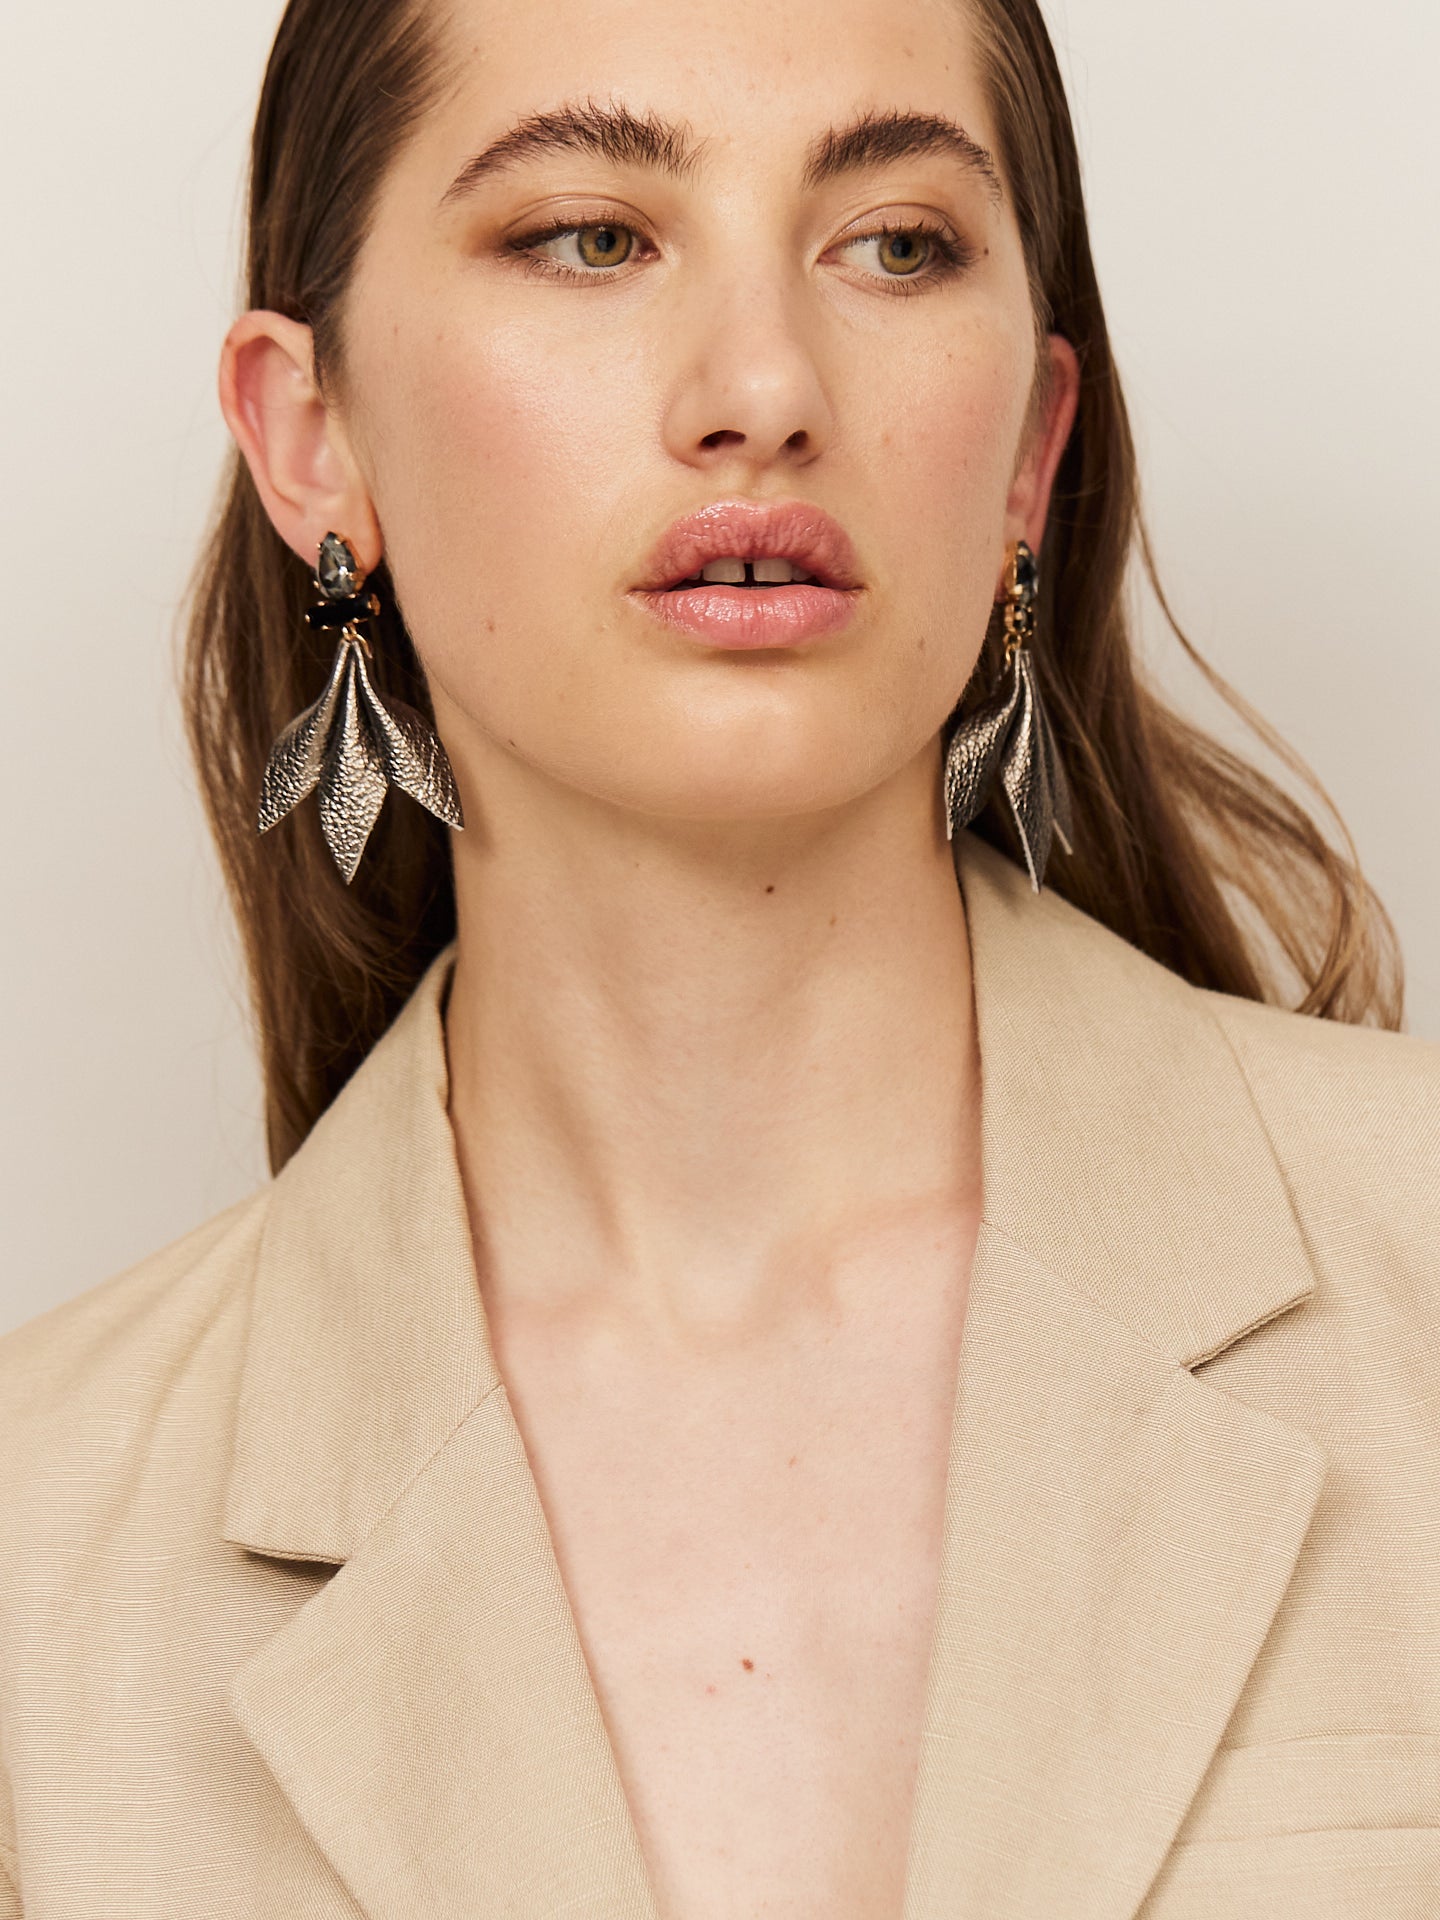 Attraktive Frau mit braunen Augen und sinnlichen Lippen, trägt einen hellen Blazer und helle Nappa Leder Ohrringe mit dunklem Stecker.